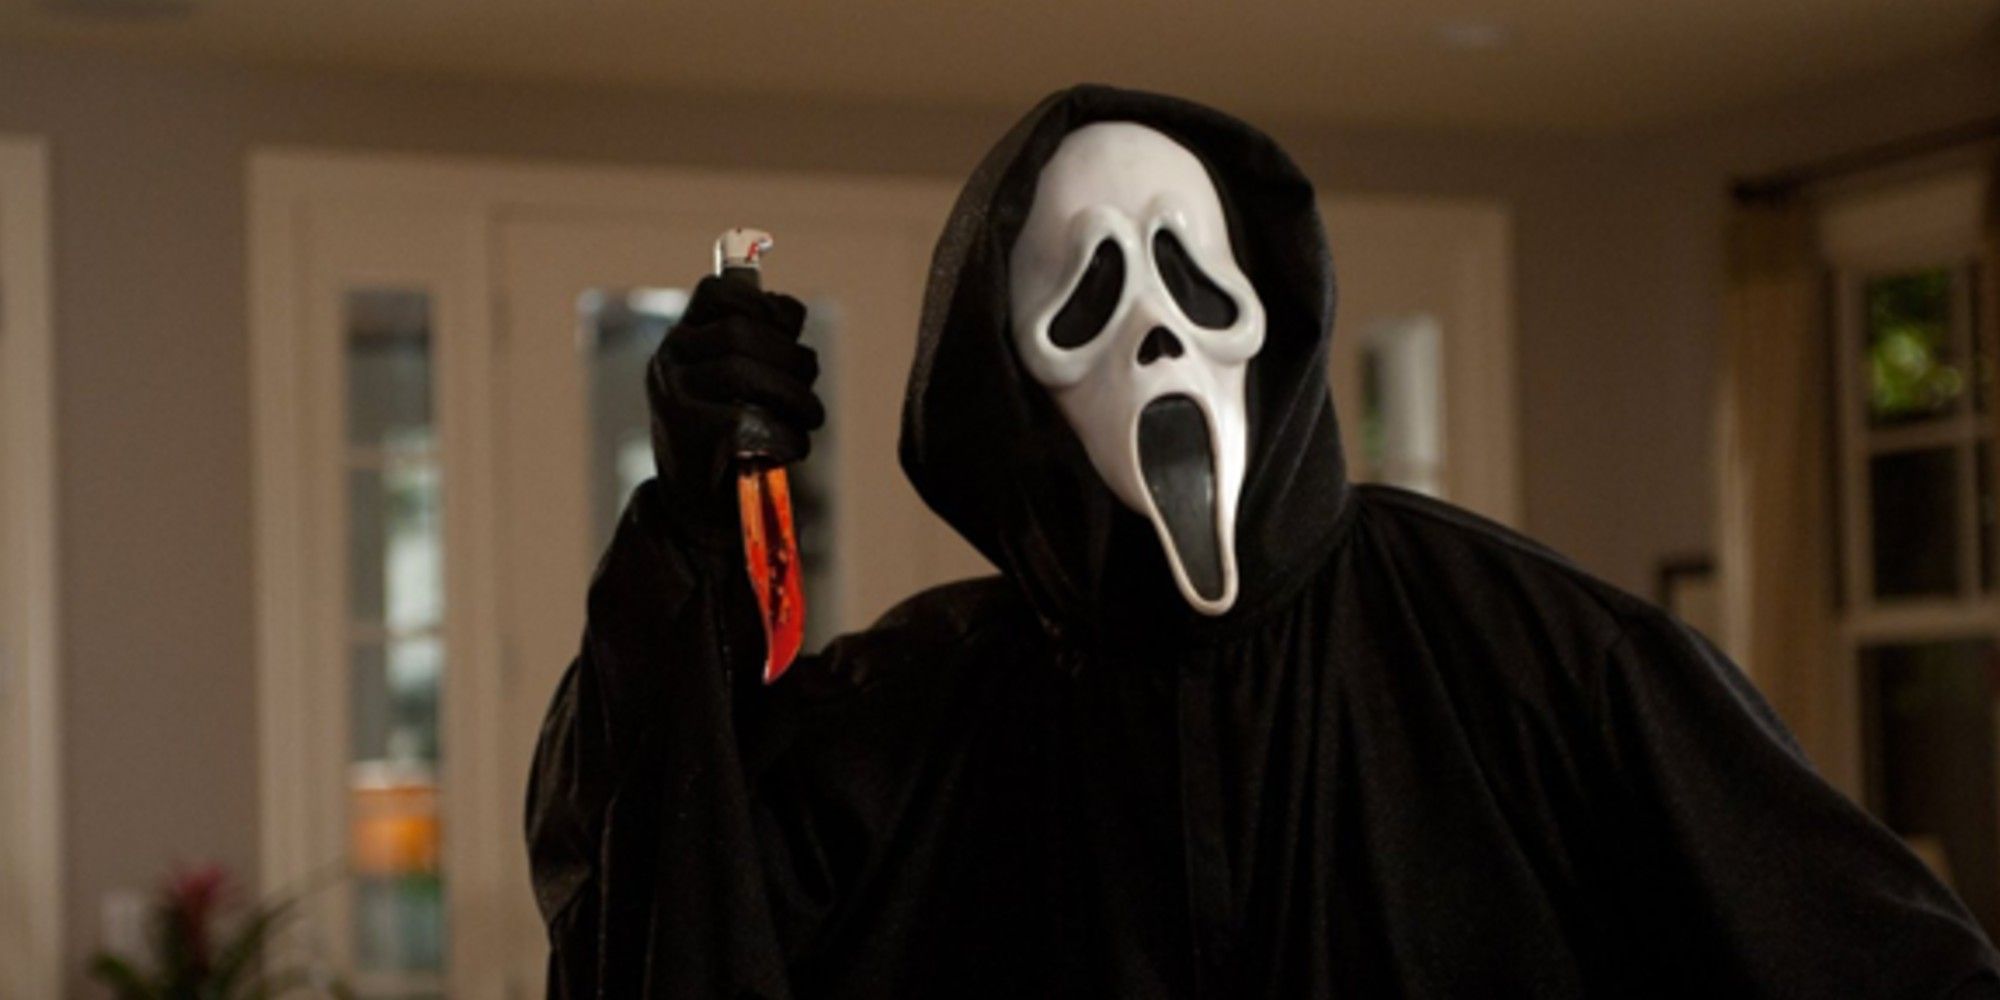 Ghostface holding a knife in Scream.